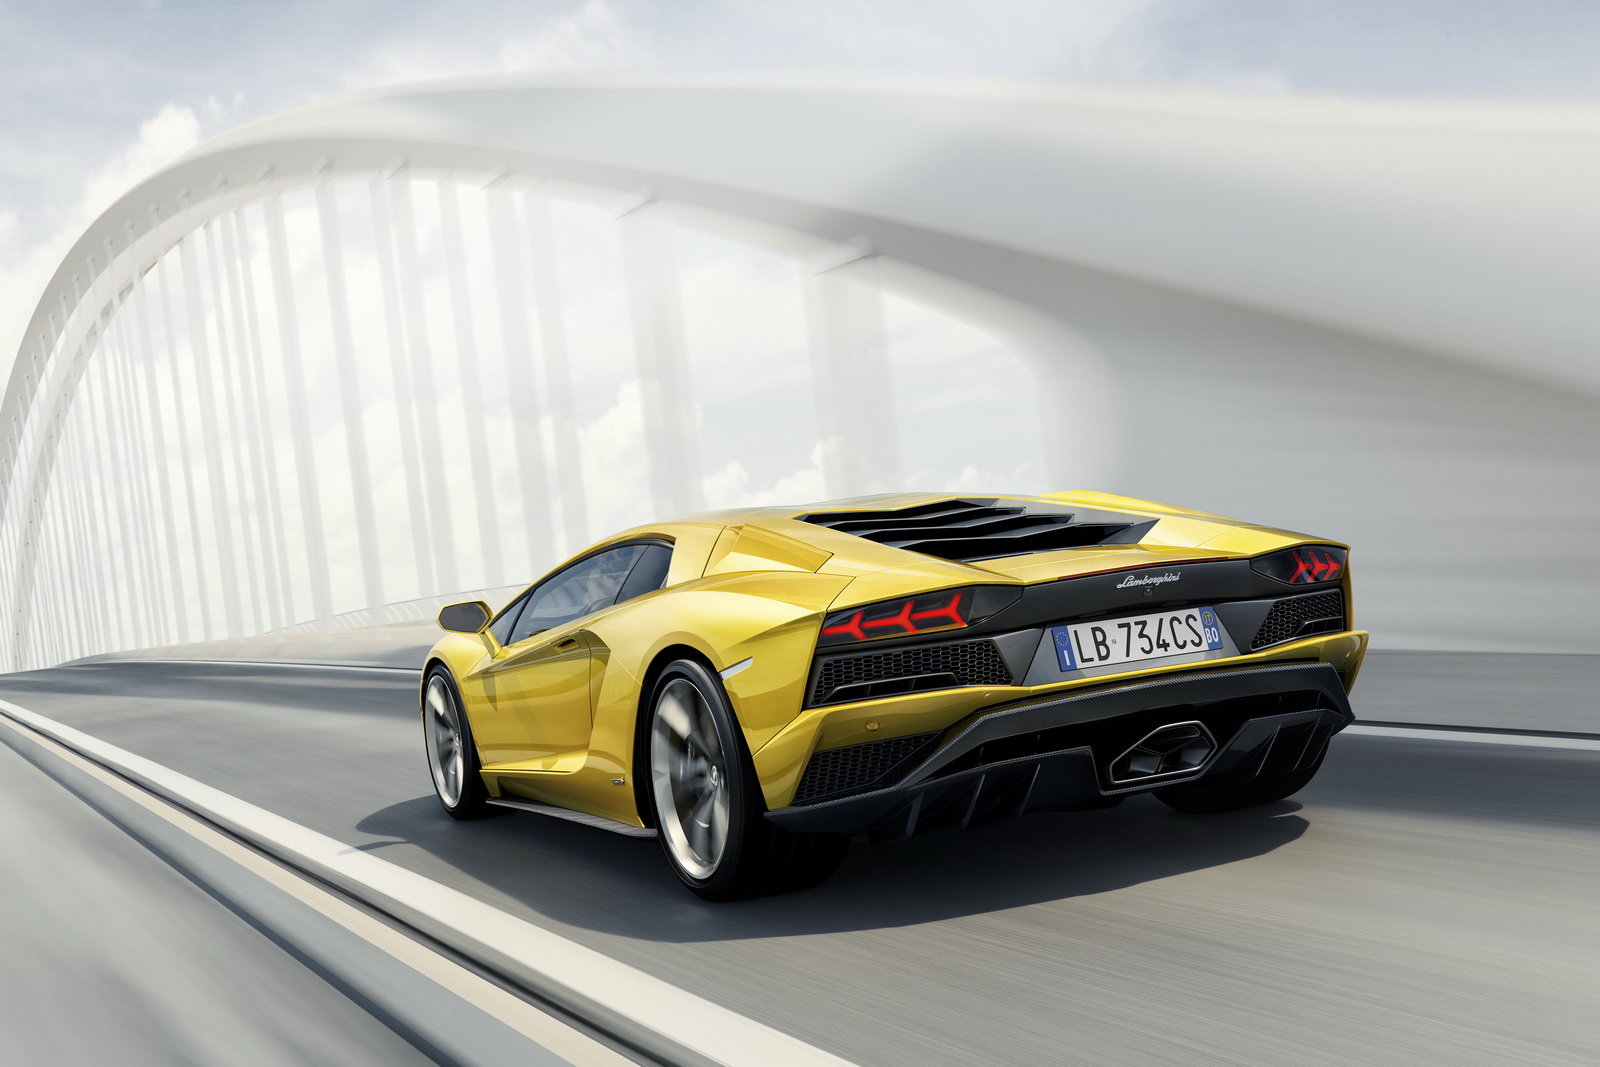 Lamborghini Aventador S má oproti předchůdci vyšší výkon a natáčení zadních kol.